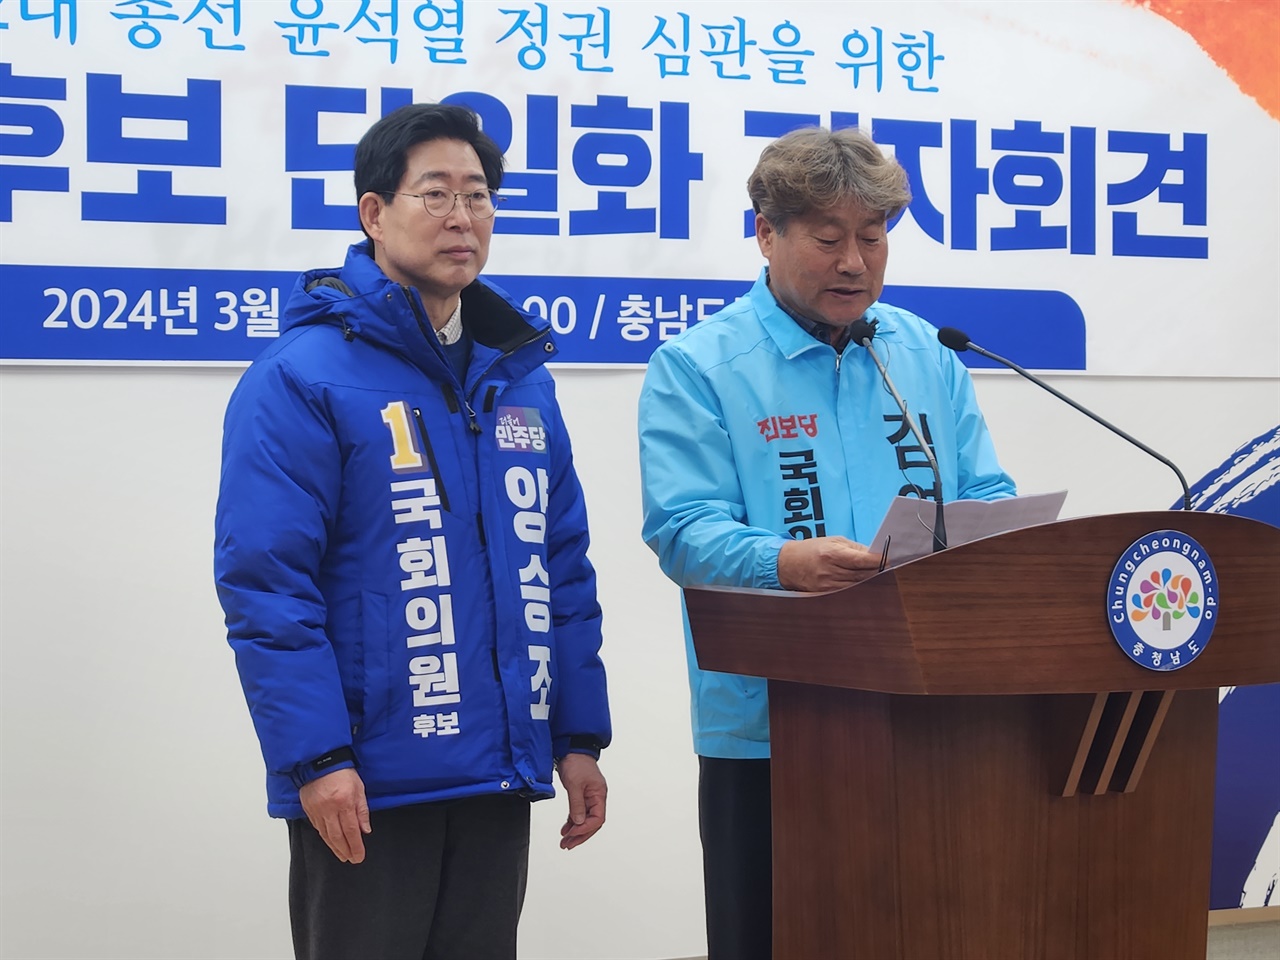 양승조 예비후보와 김영호 예비후보가 19일 충남도청에서 기자회견을 열고 있다. 